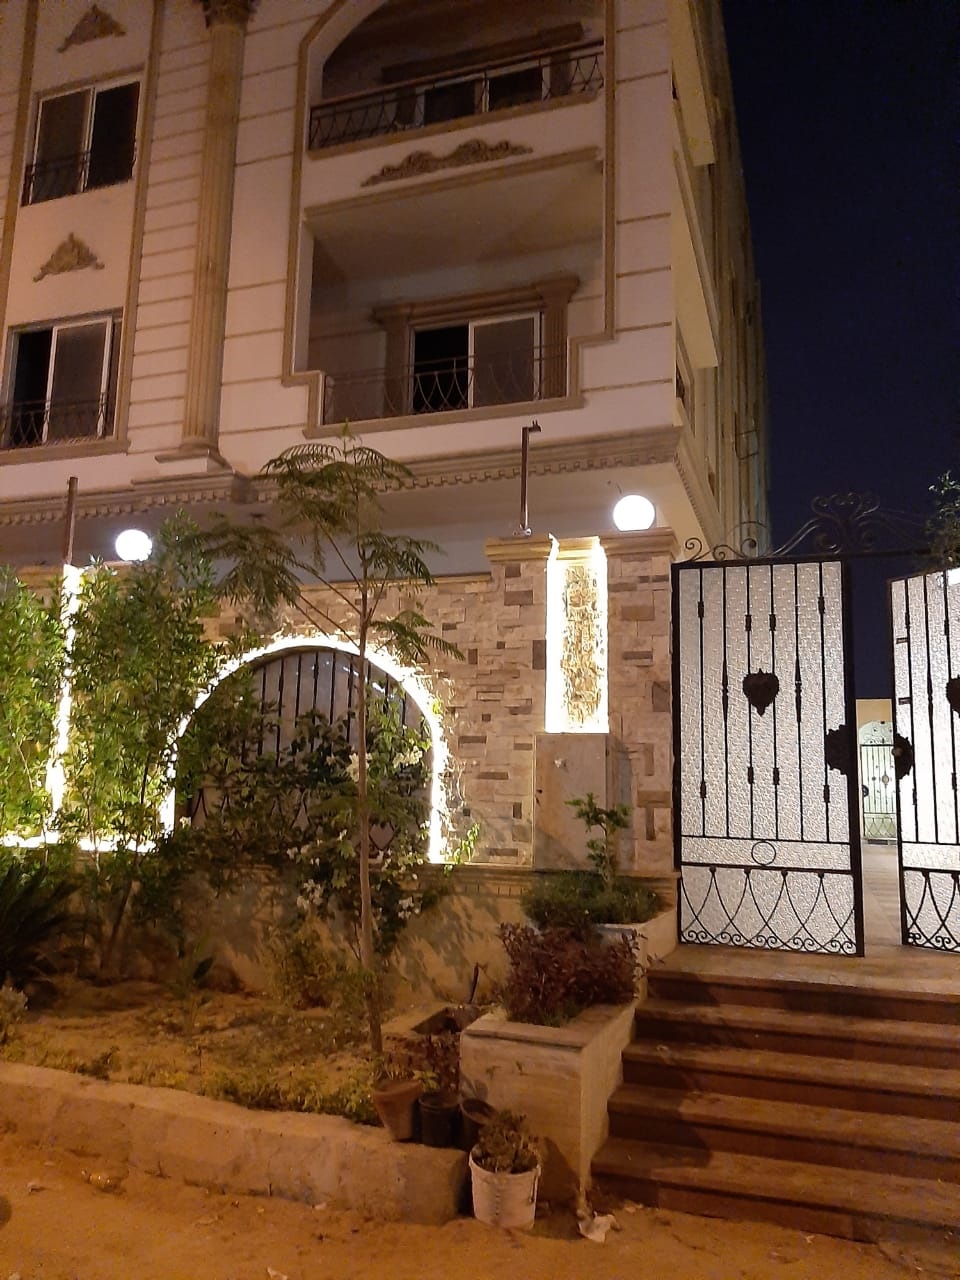 Prime Location Apartment For Sale At the 3rd District New Cairo شقة بموقع متميز للبيع في التجمع الثالث القاهرة الجديدة.jpg